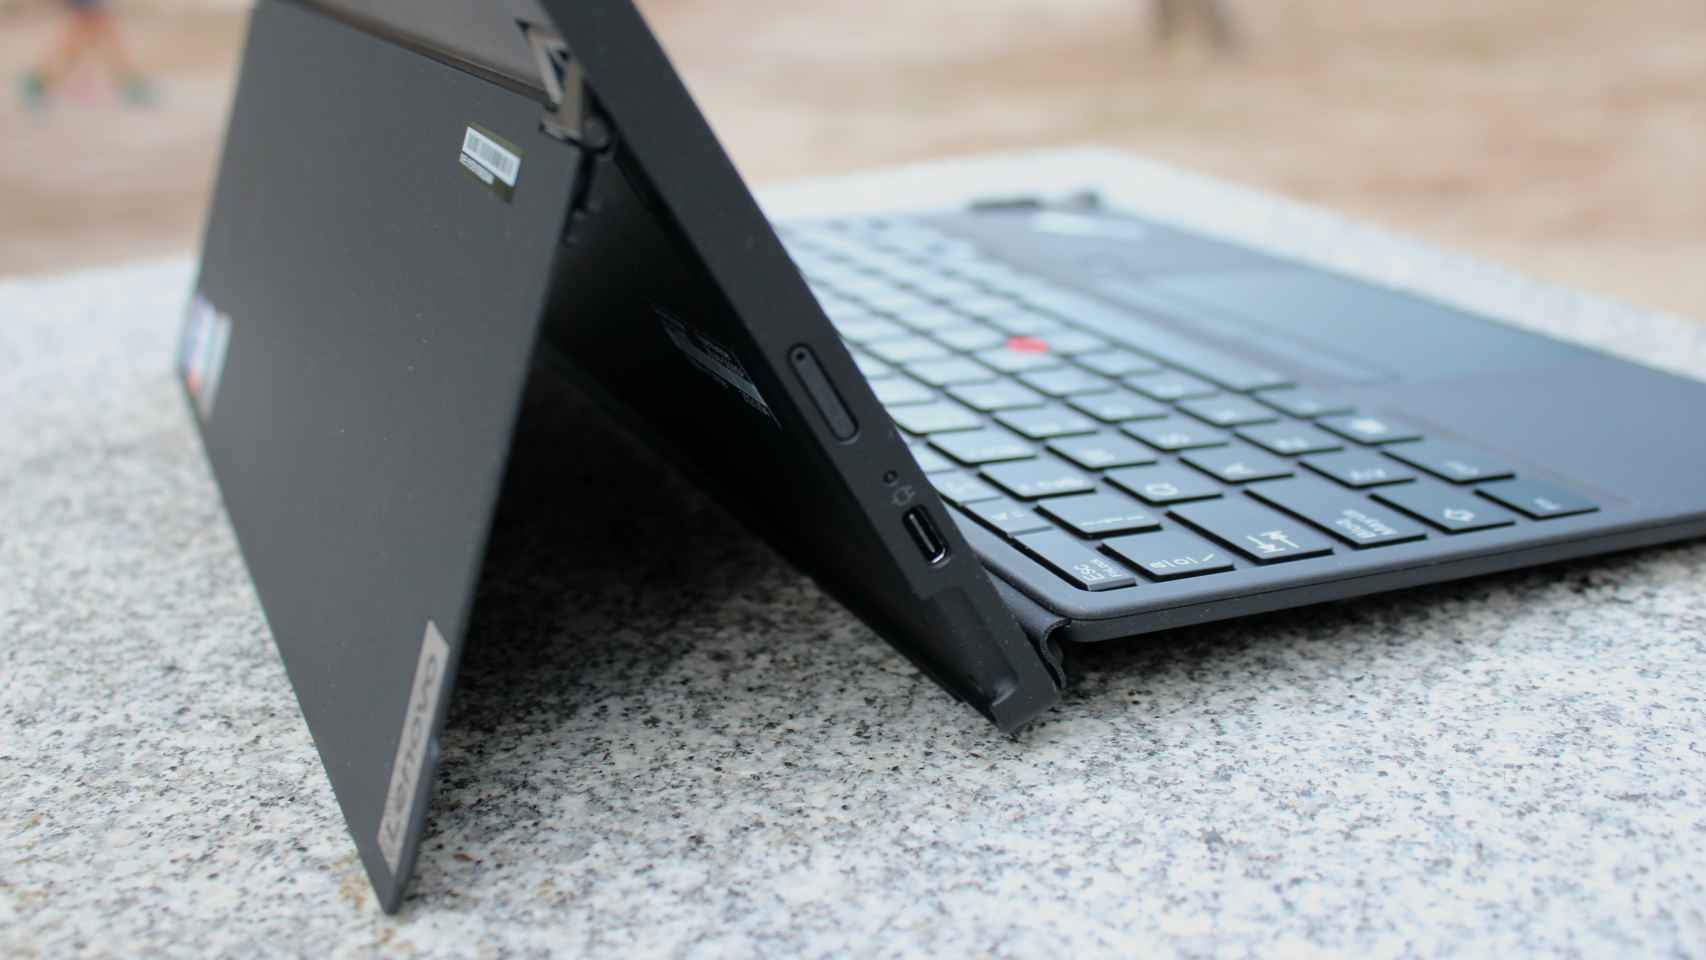 ThinkPad X12 Detachable